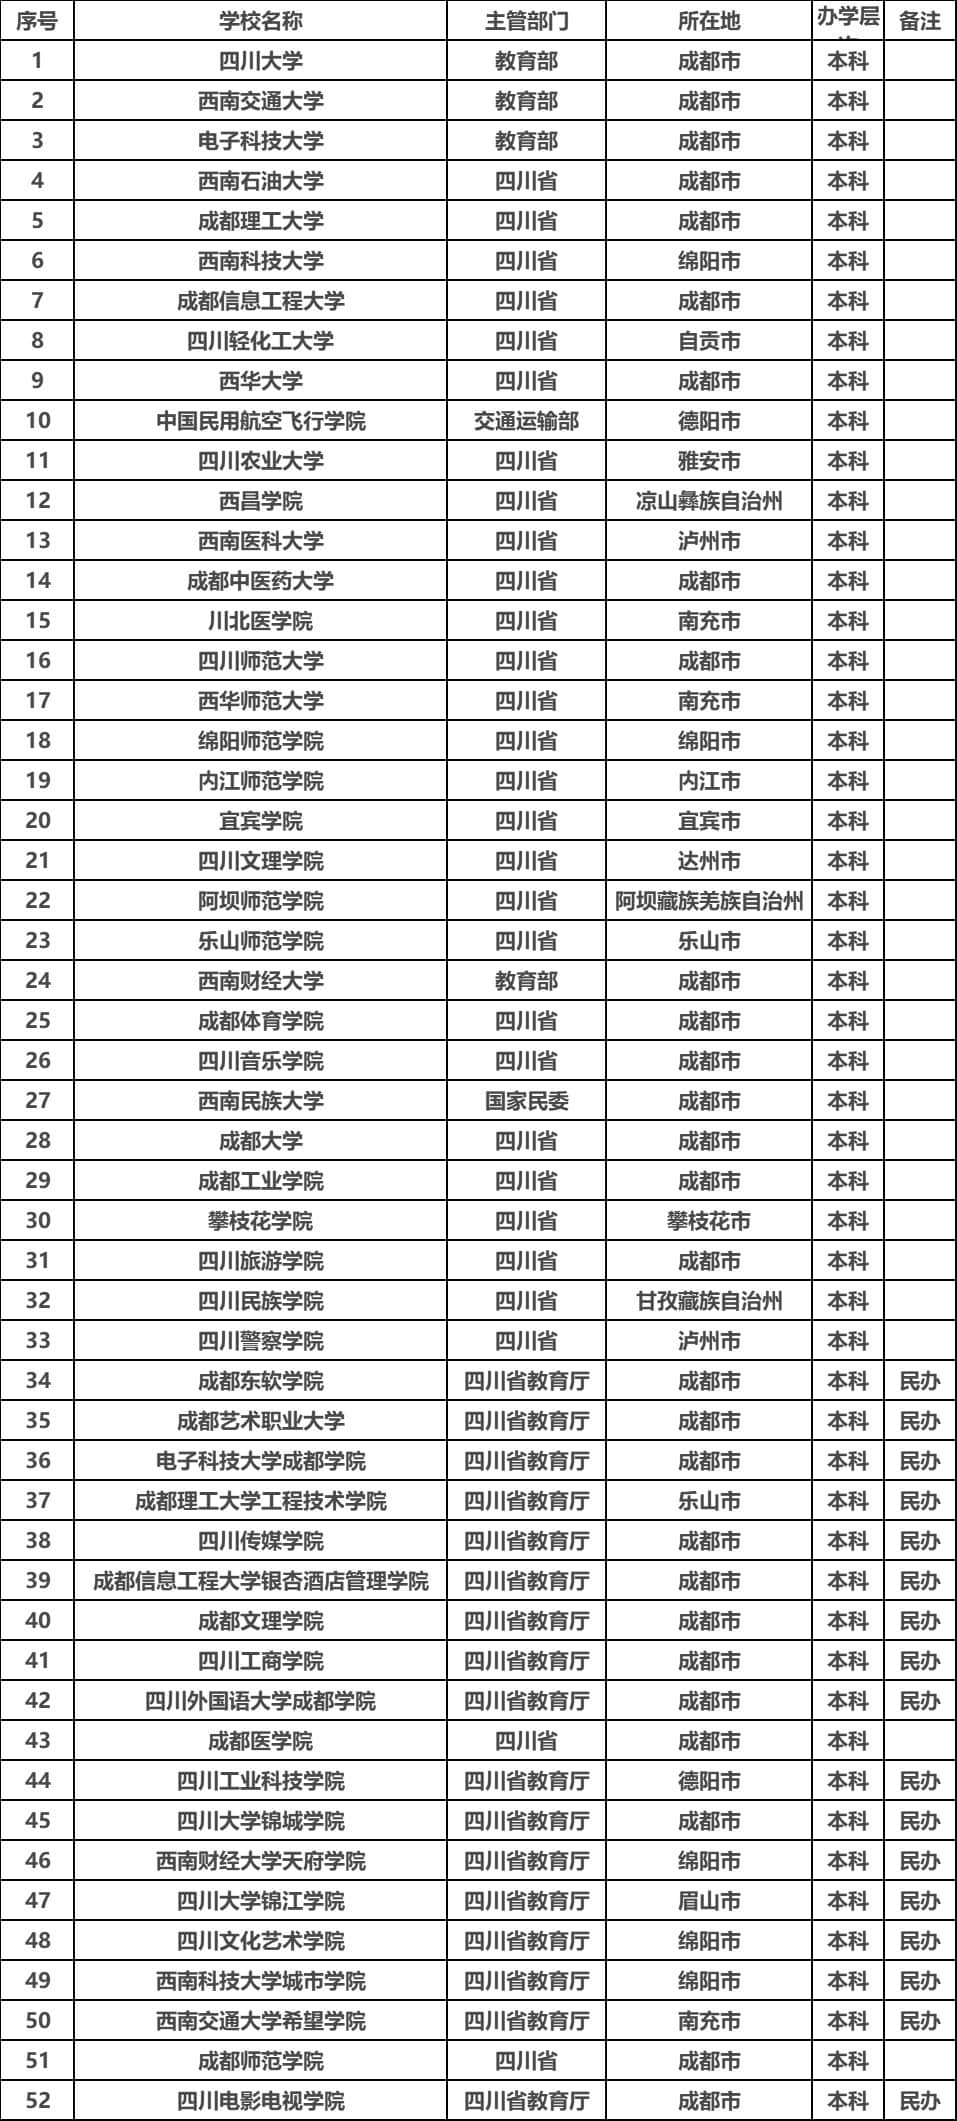 教育部发布四川所有大学名单 附四川126所大学名单